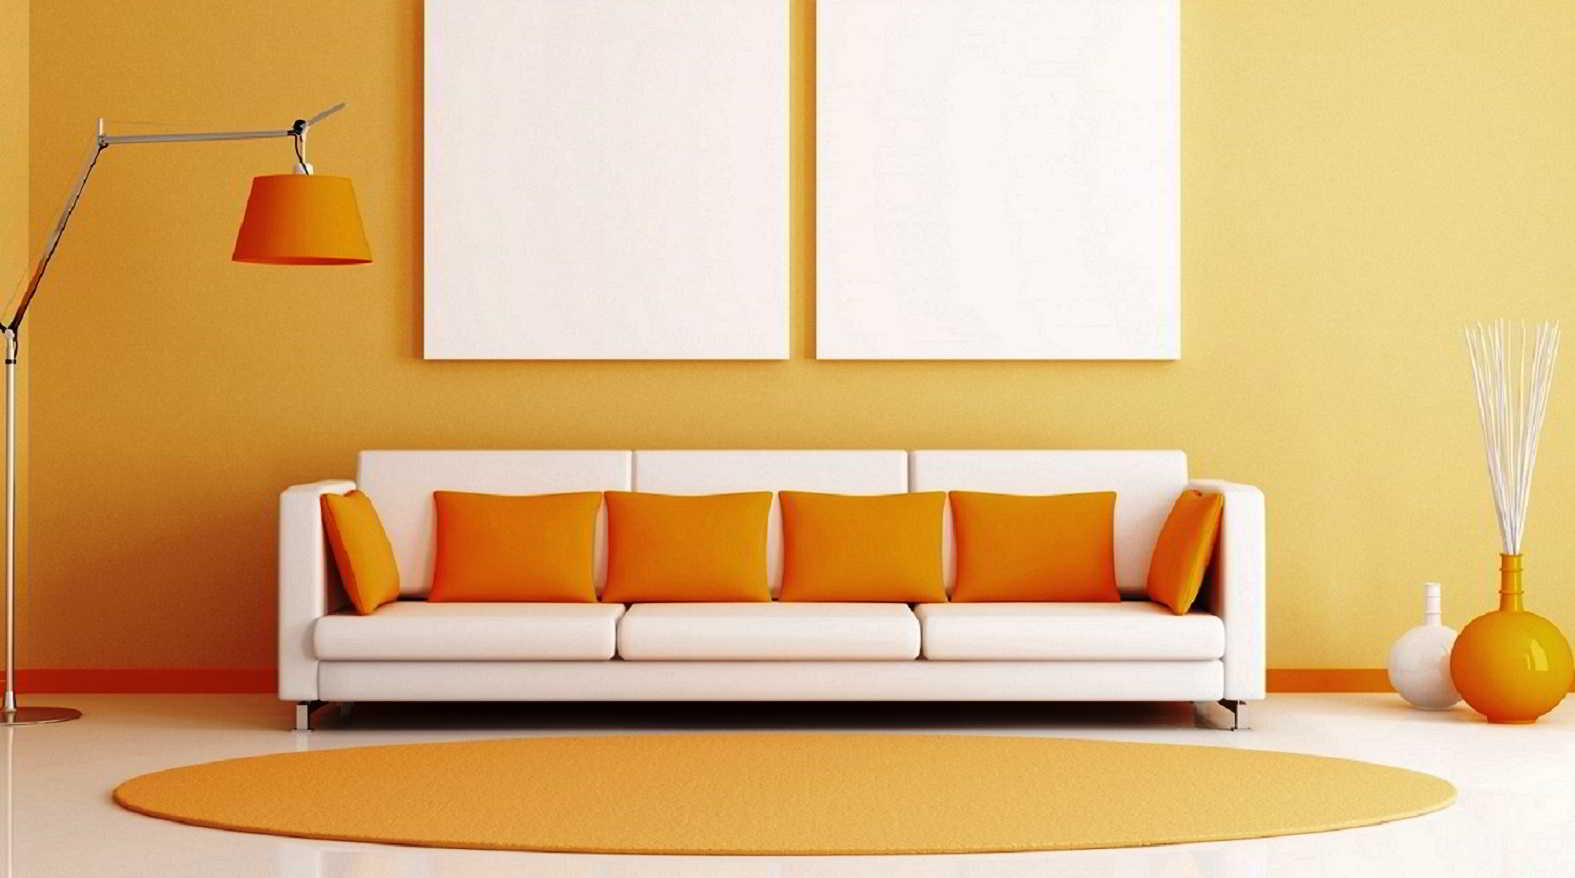 50 Desain Model Kursi Sofa Ruang Tamu Minimalis Modern Terbaru